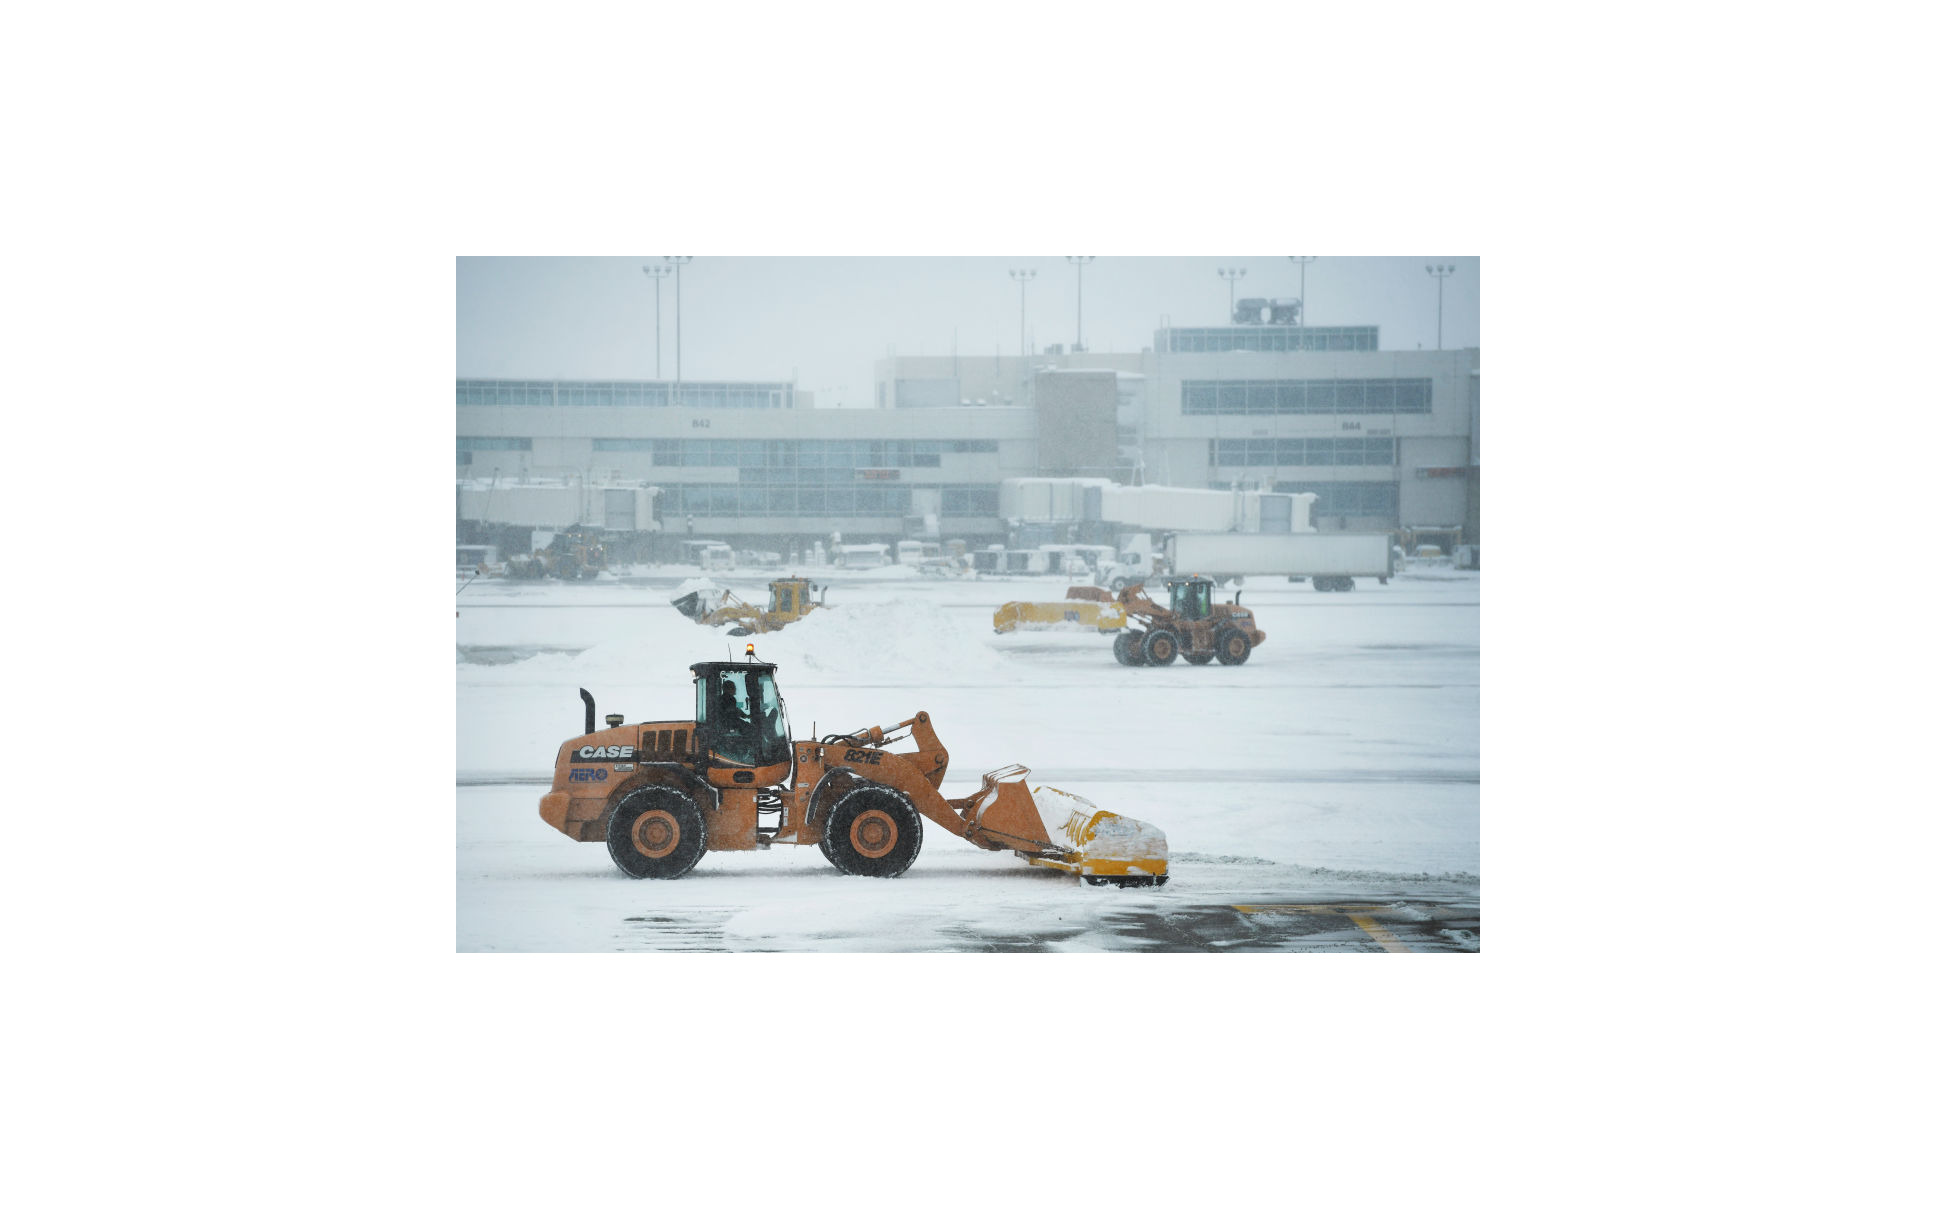 雪に立ち向かう 世界の除雪車 フォトレポート 写真38枚 14枚目の写真 画像 レスポンス Response Jp